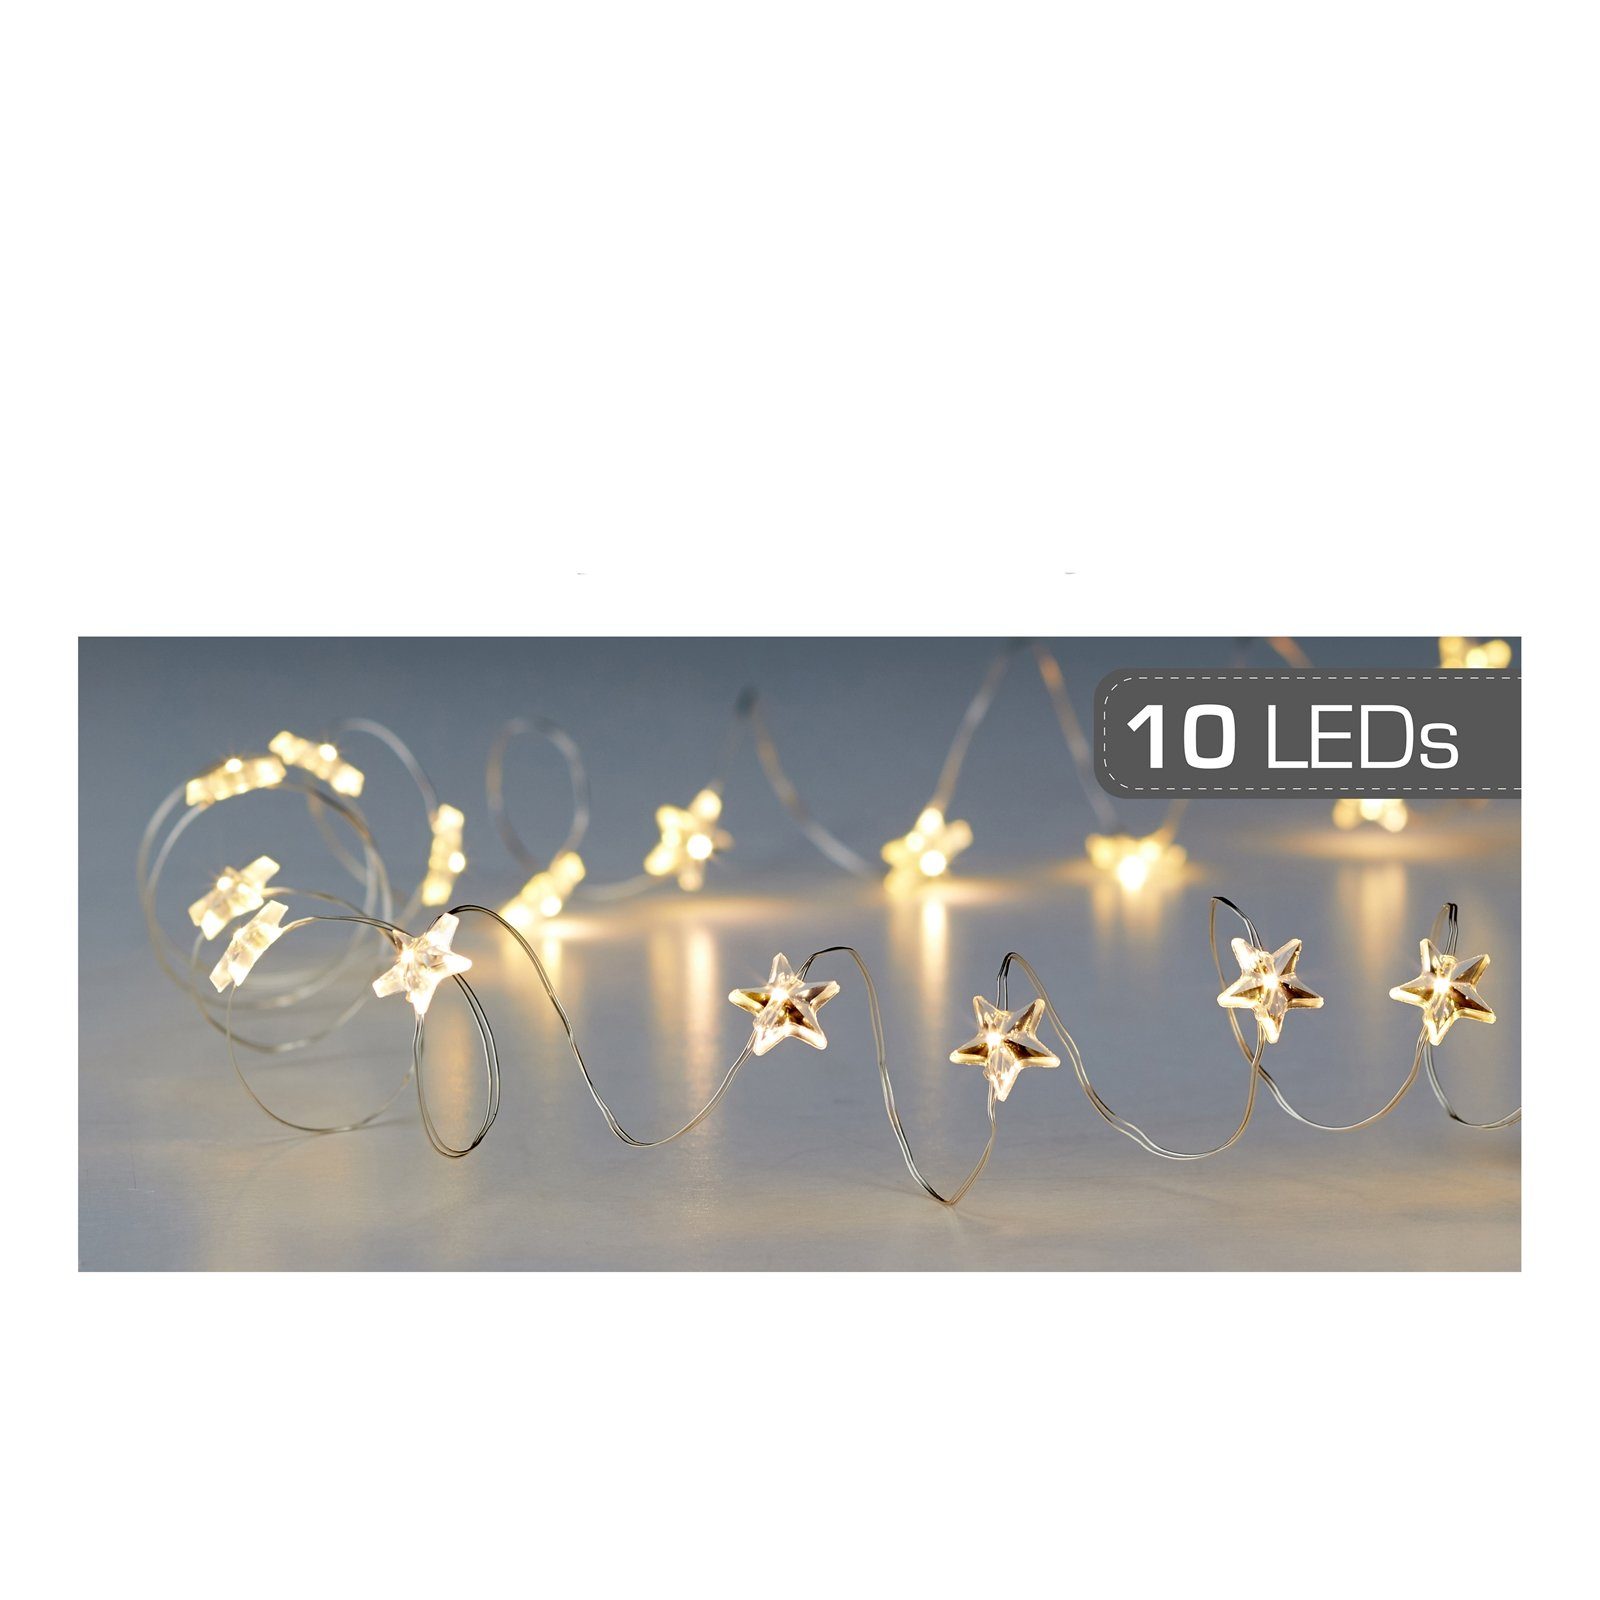 CEPEWA LED-Lichterkette LED Lichterkette 10 LED Stern, Drahtlichterkette